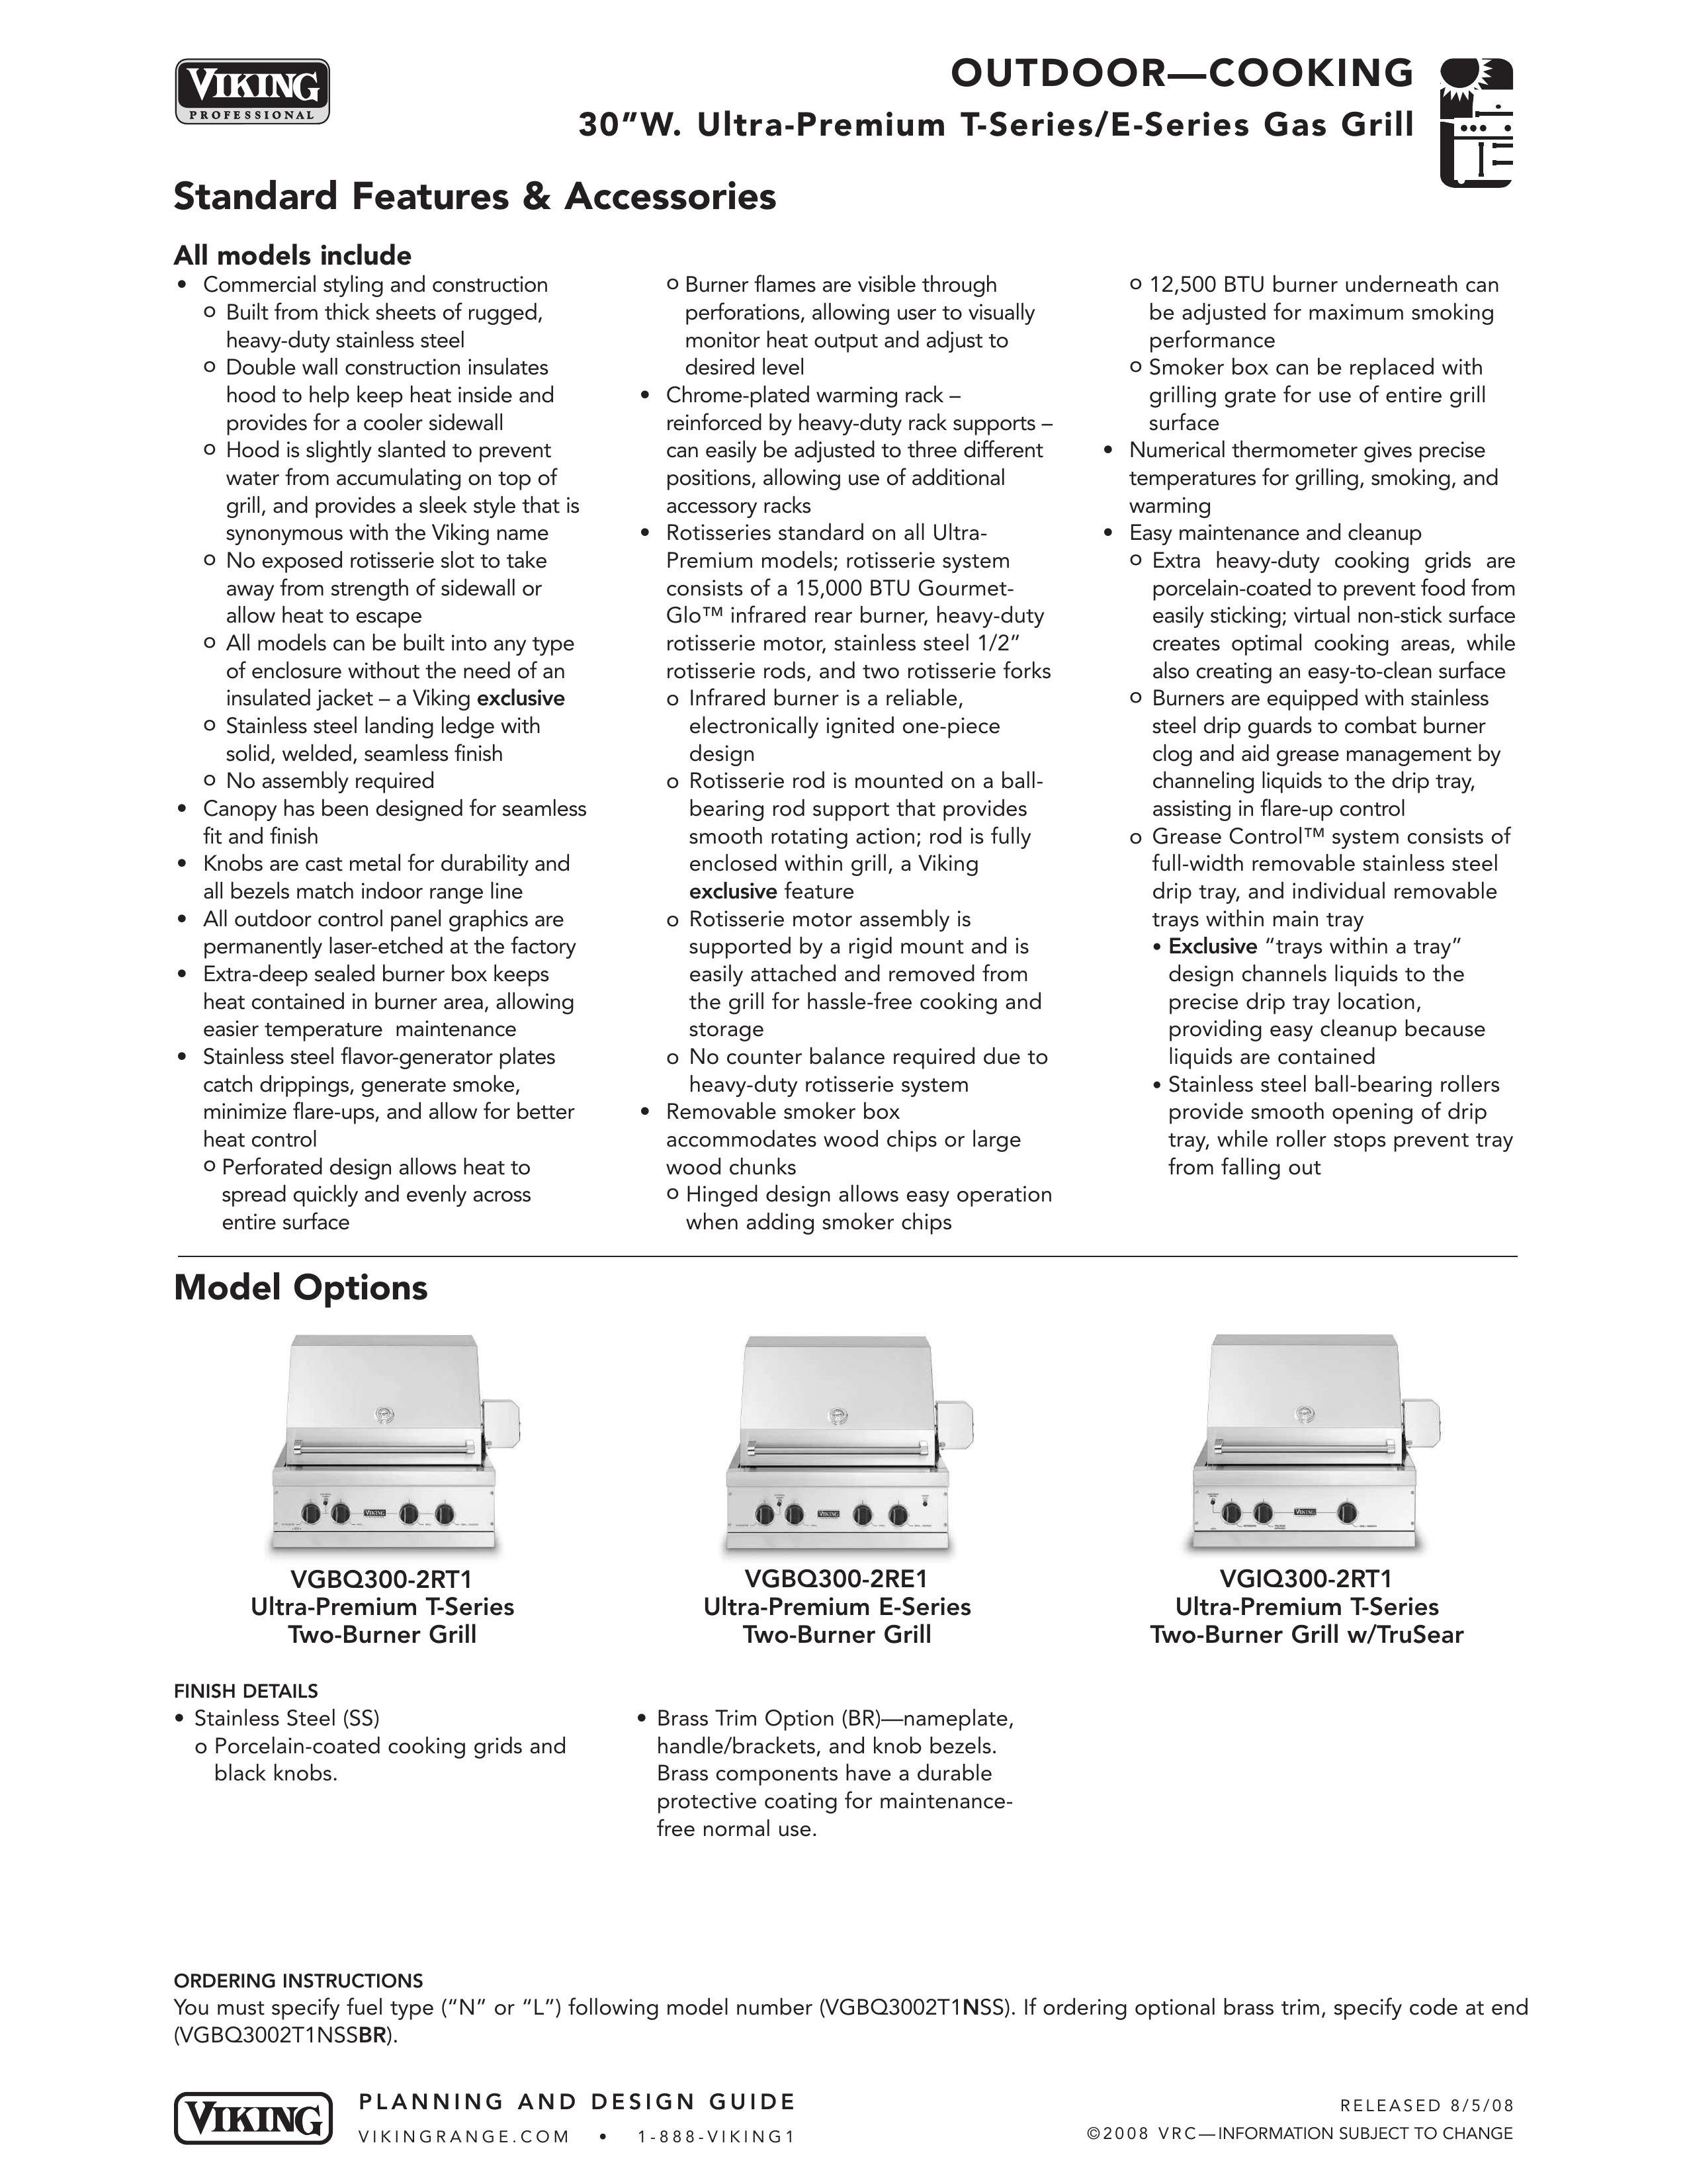 Viking VGBQ3002T1NSS Gas Grill User Manual